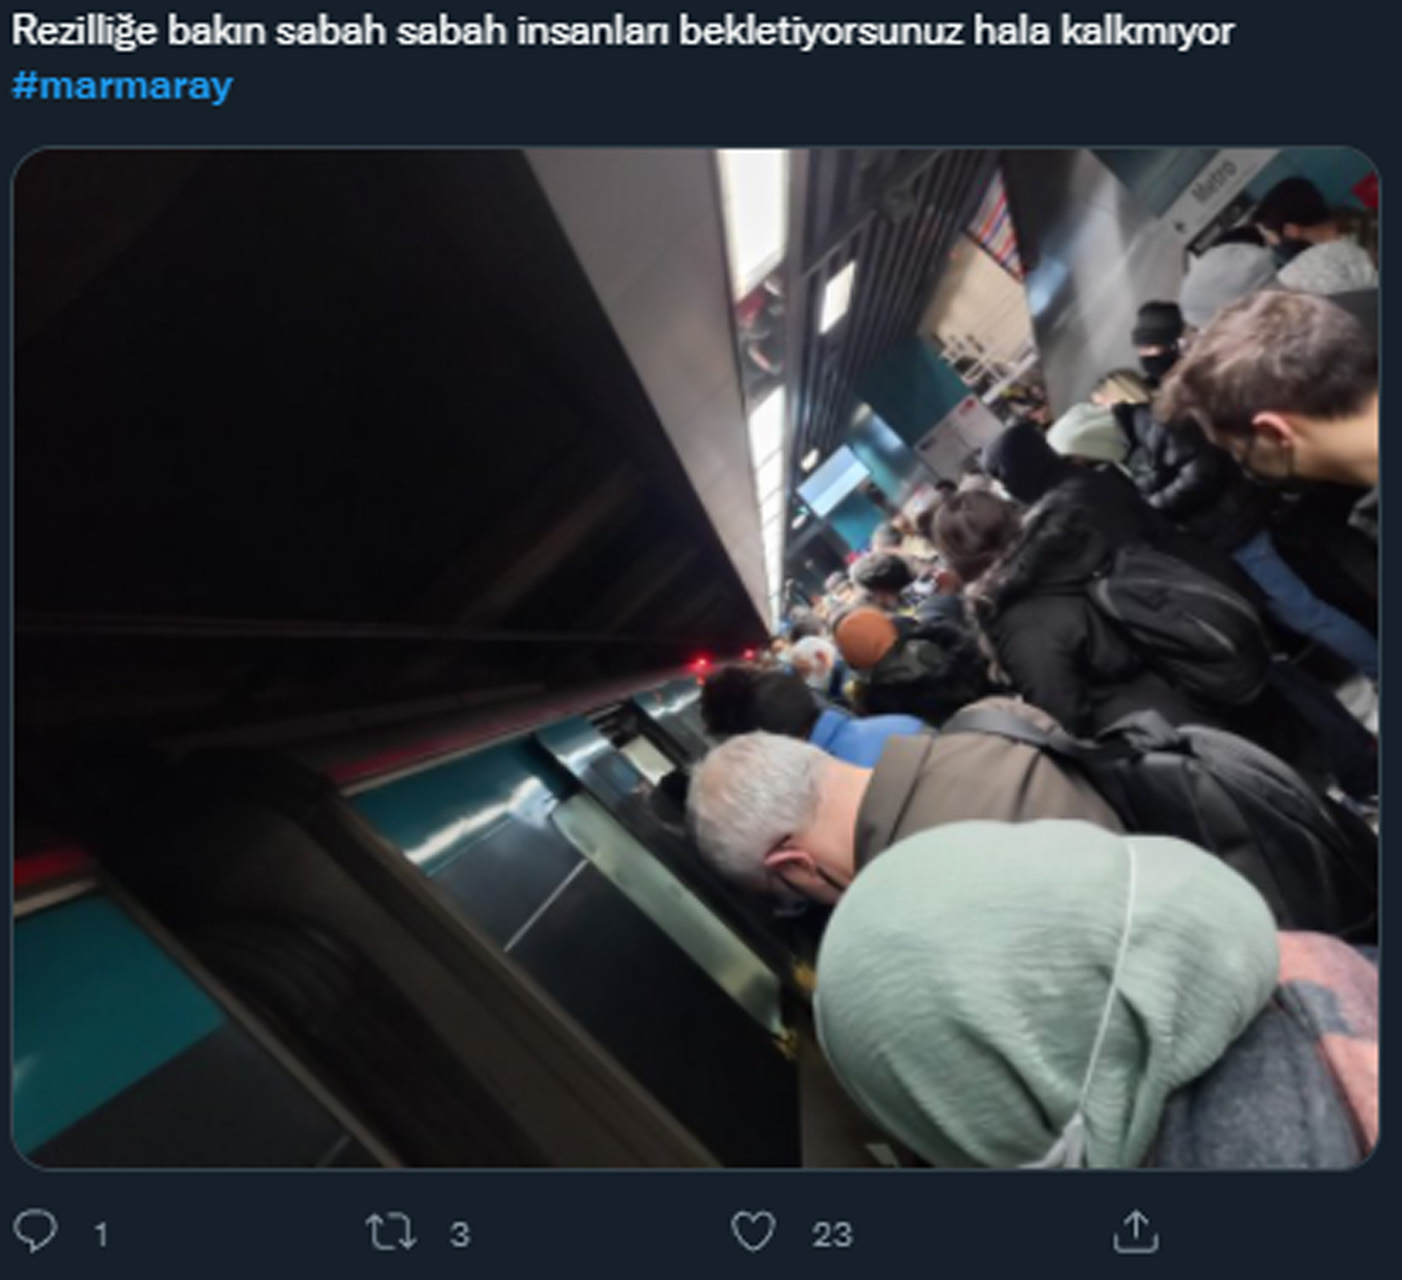 Marmaray’da arıza yaşandı! Vatandaş sosyal medyadan tepki gösterdi